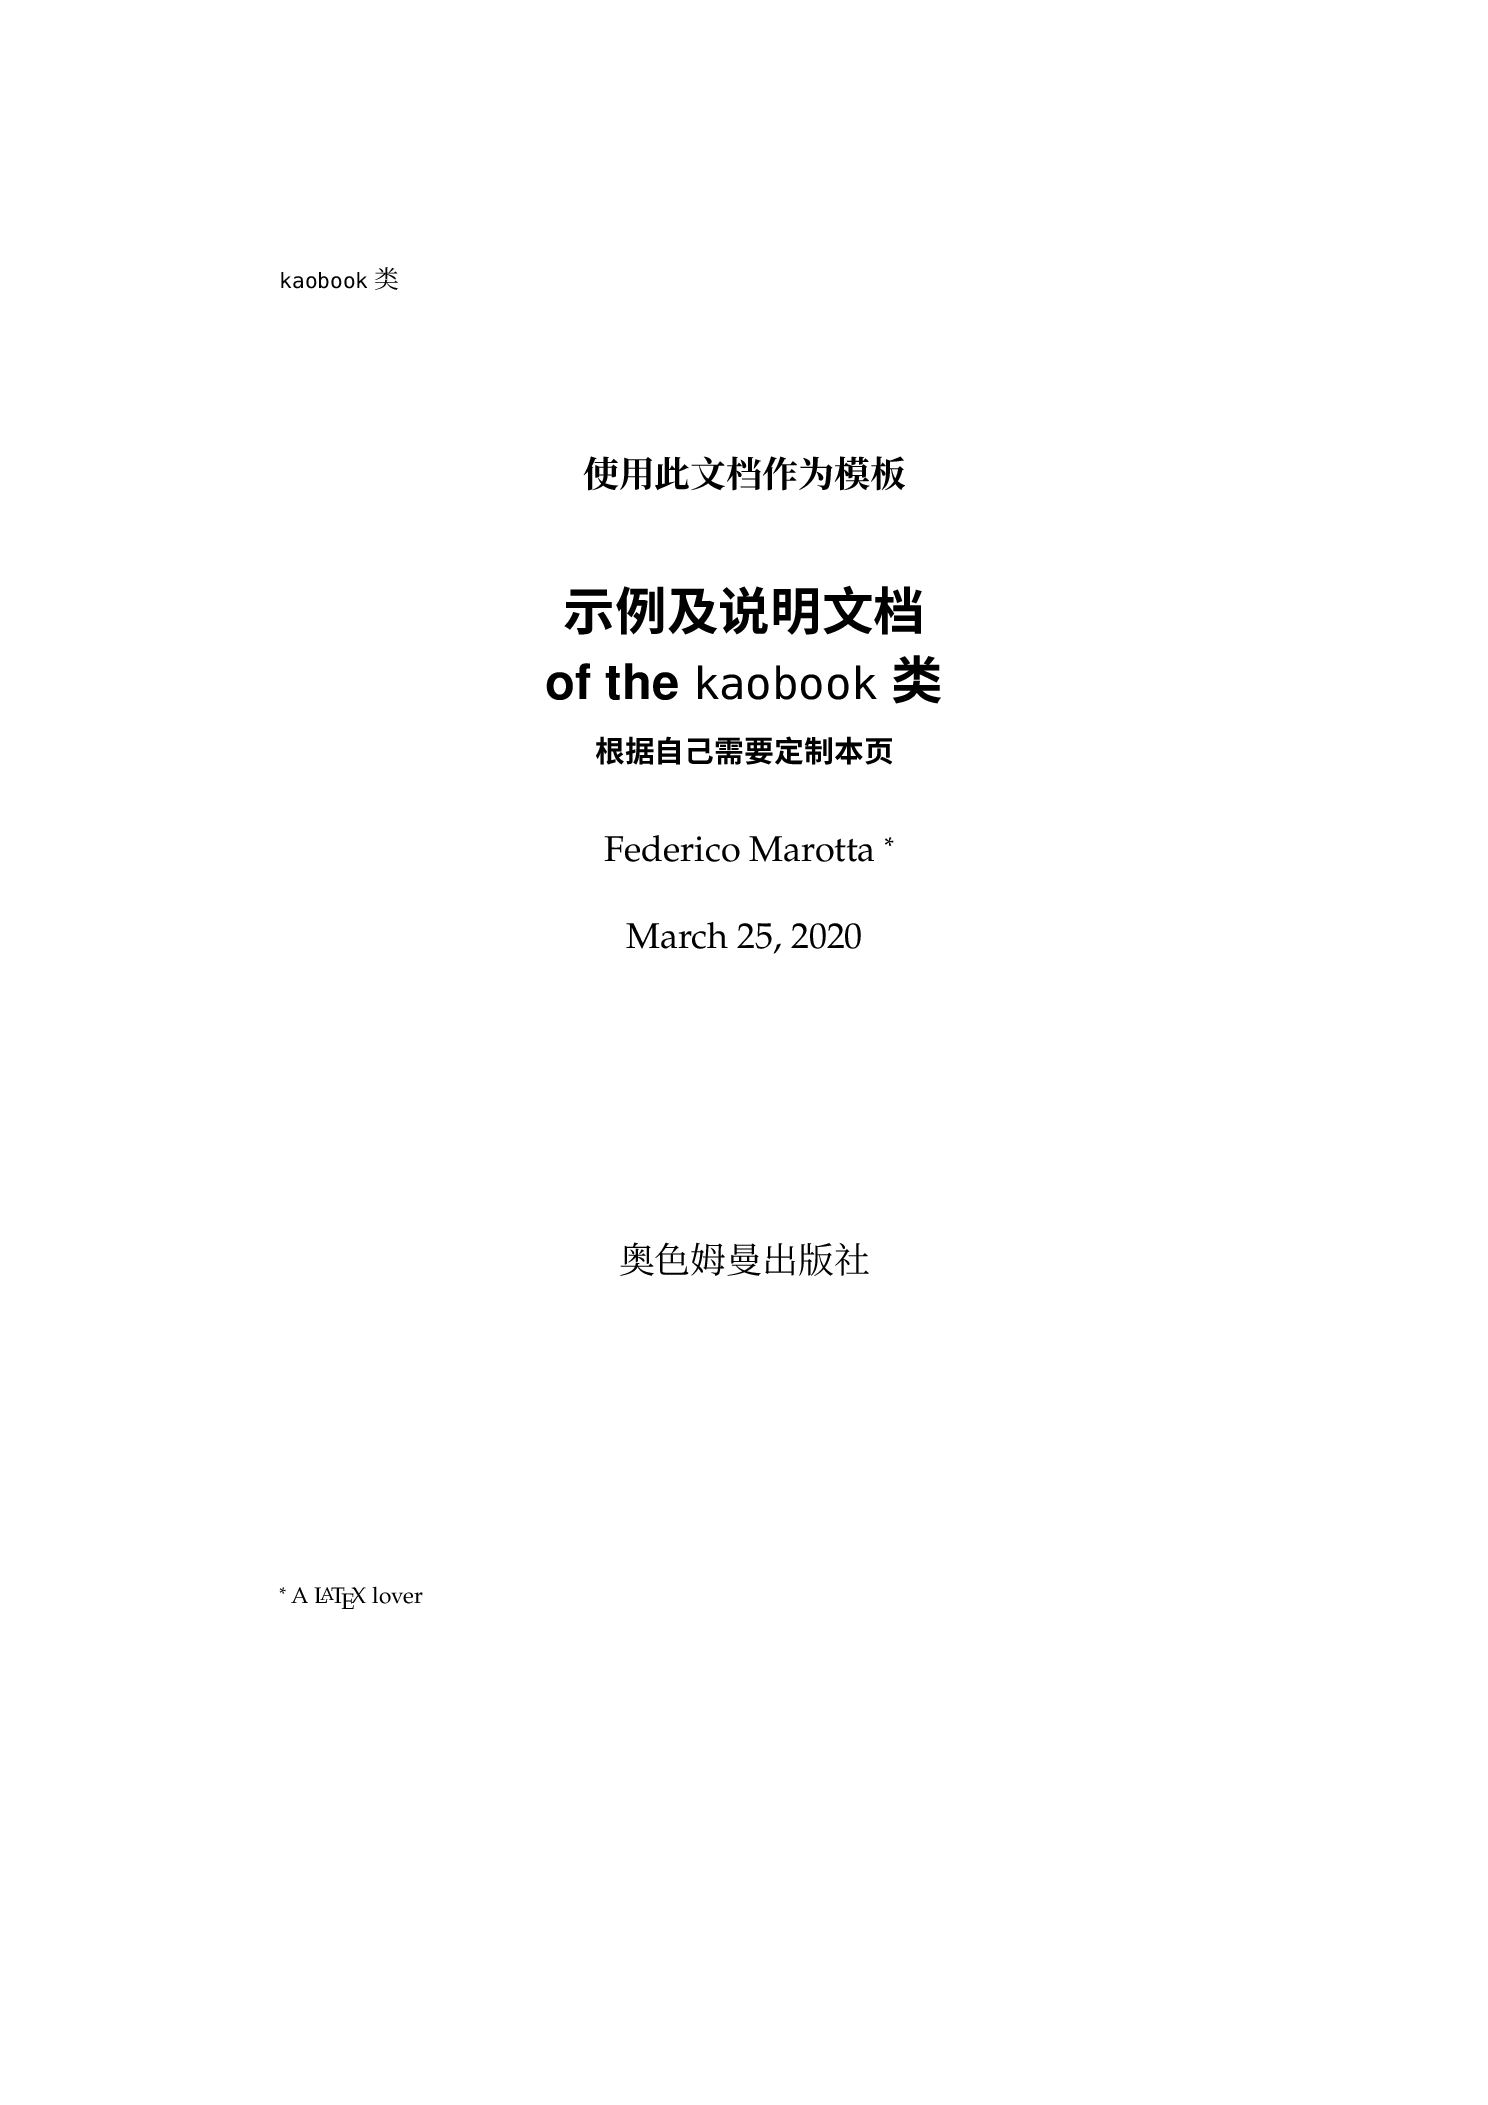 美美哒书籍 LaTeX 模板汉化版